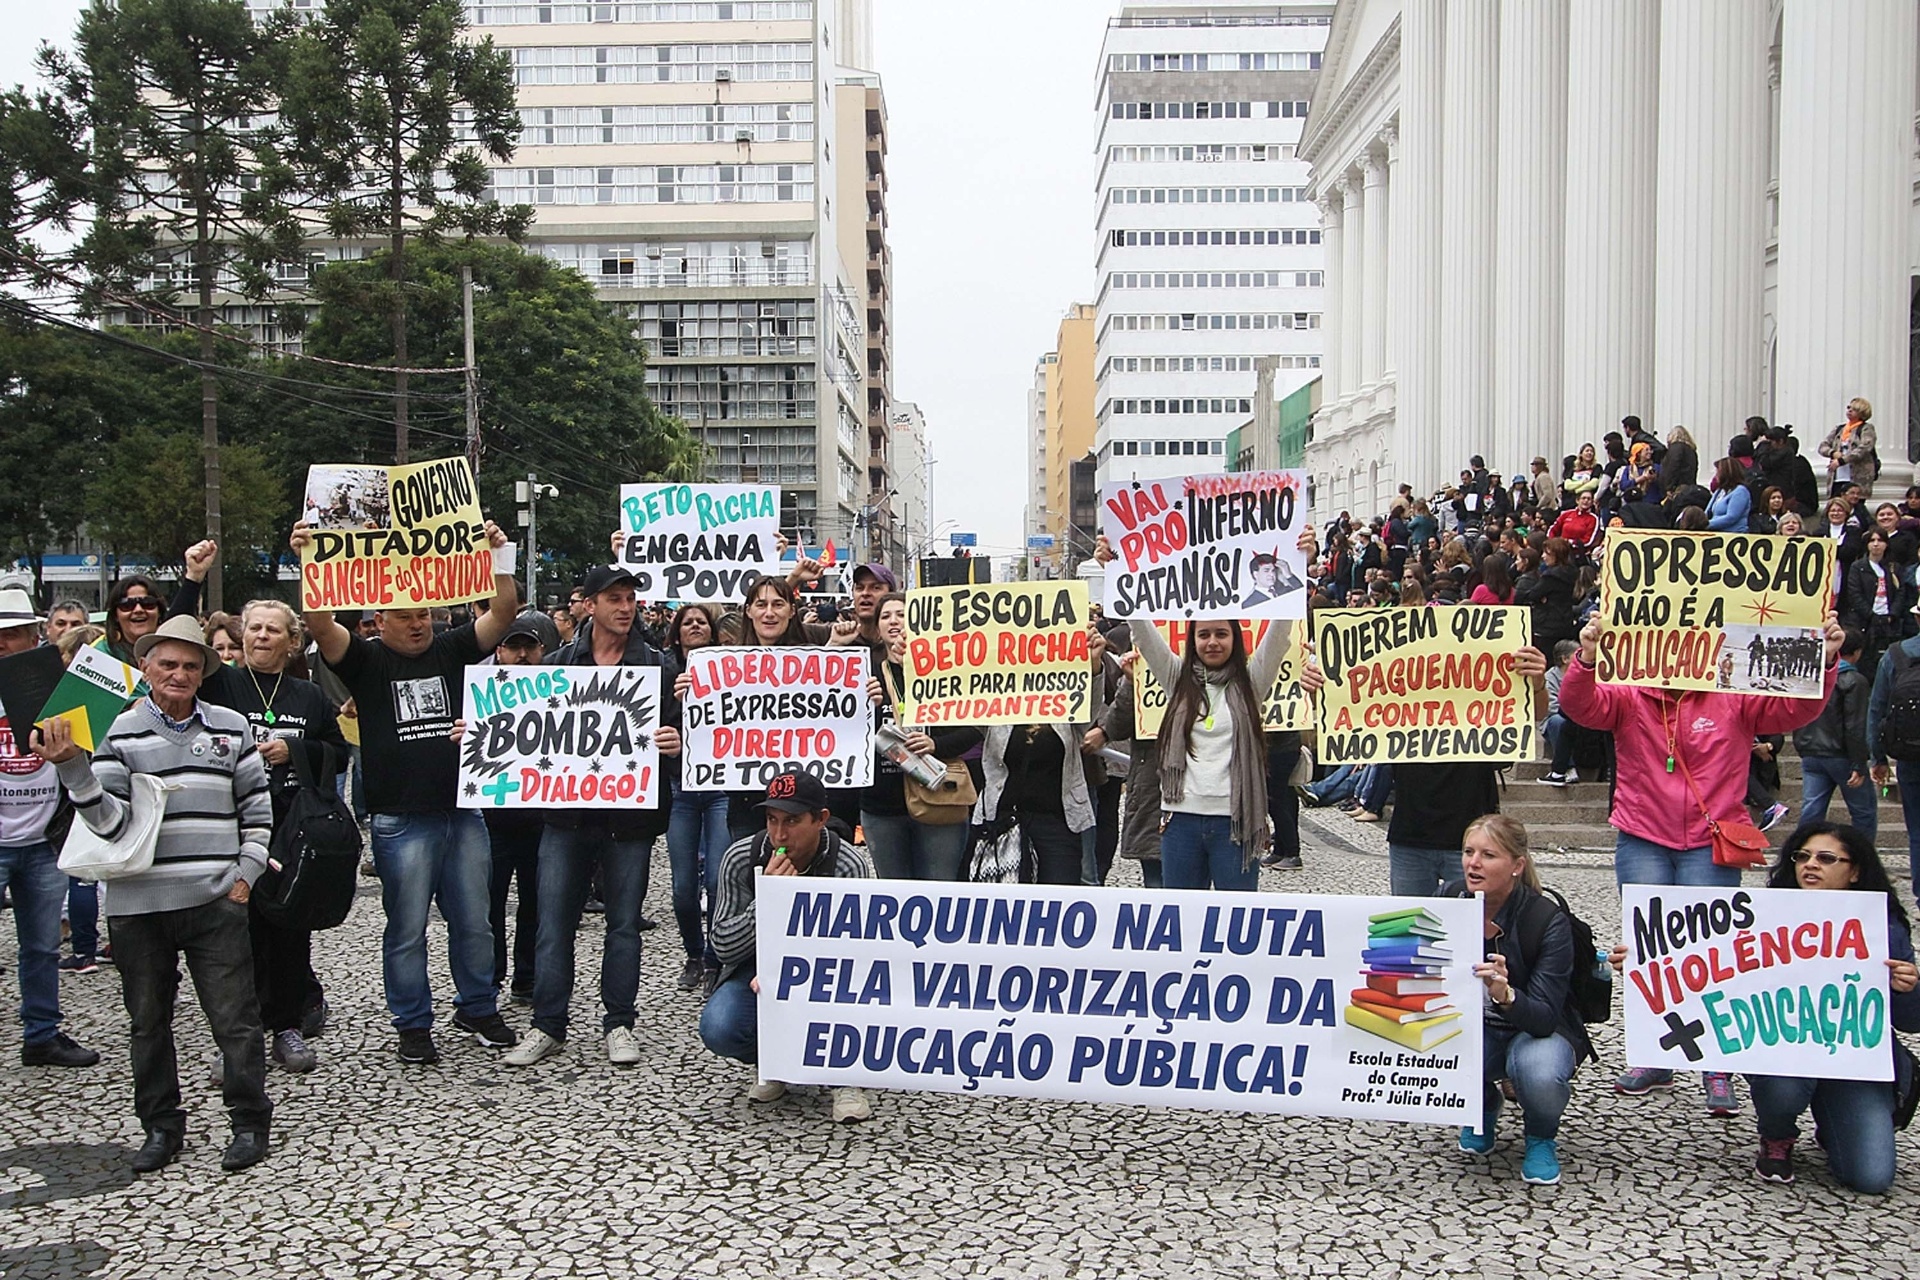 Fotos Veja Fotos Dos Protestos De Professores No Paran Uol Educa O